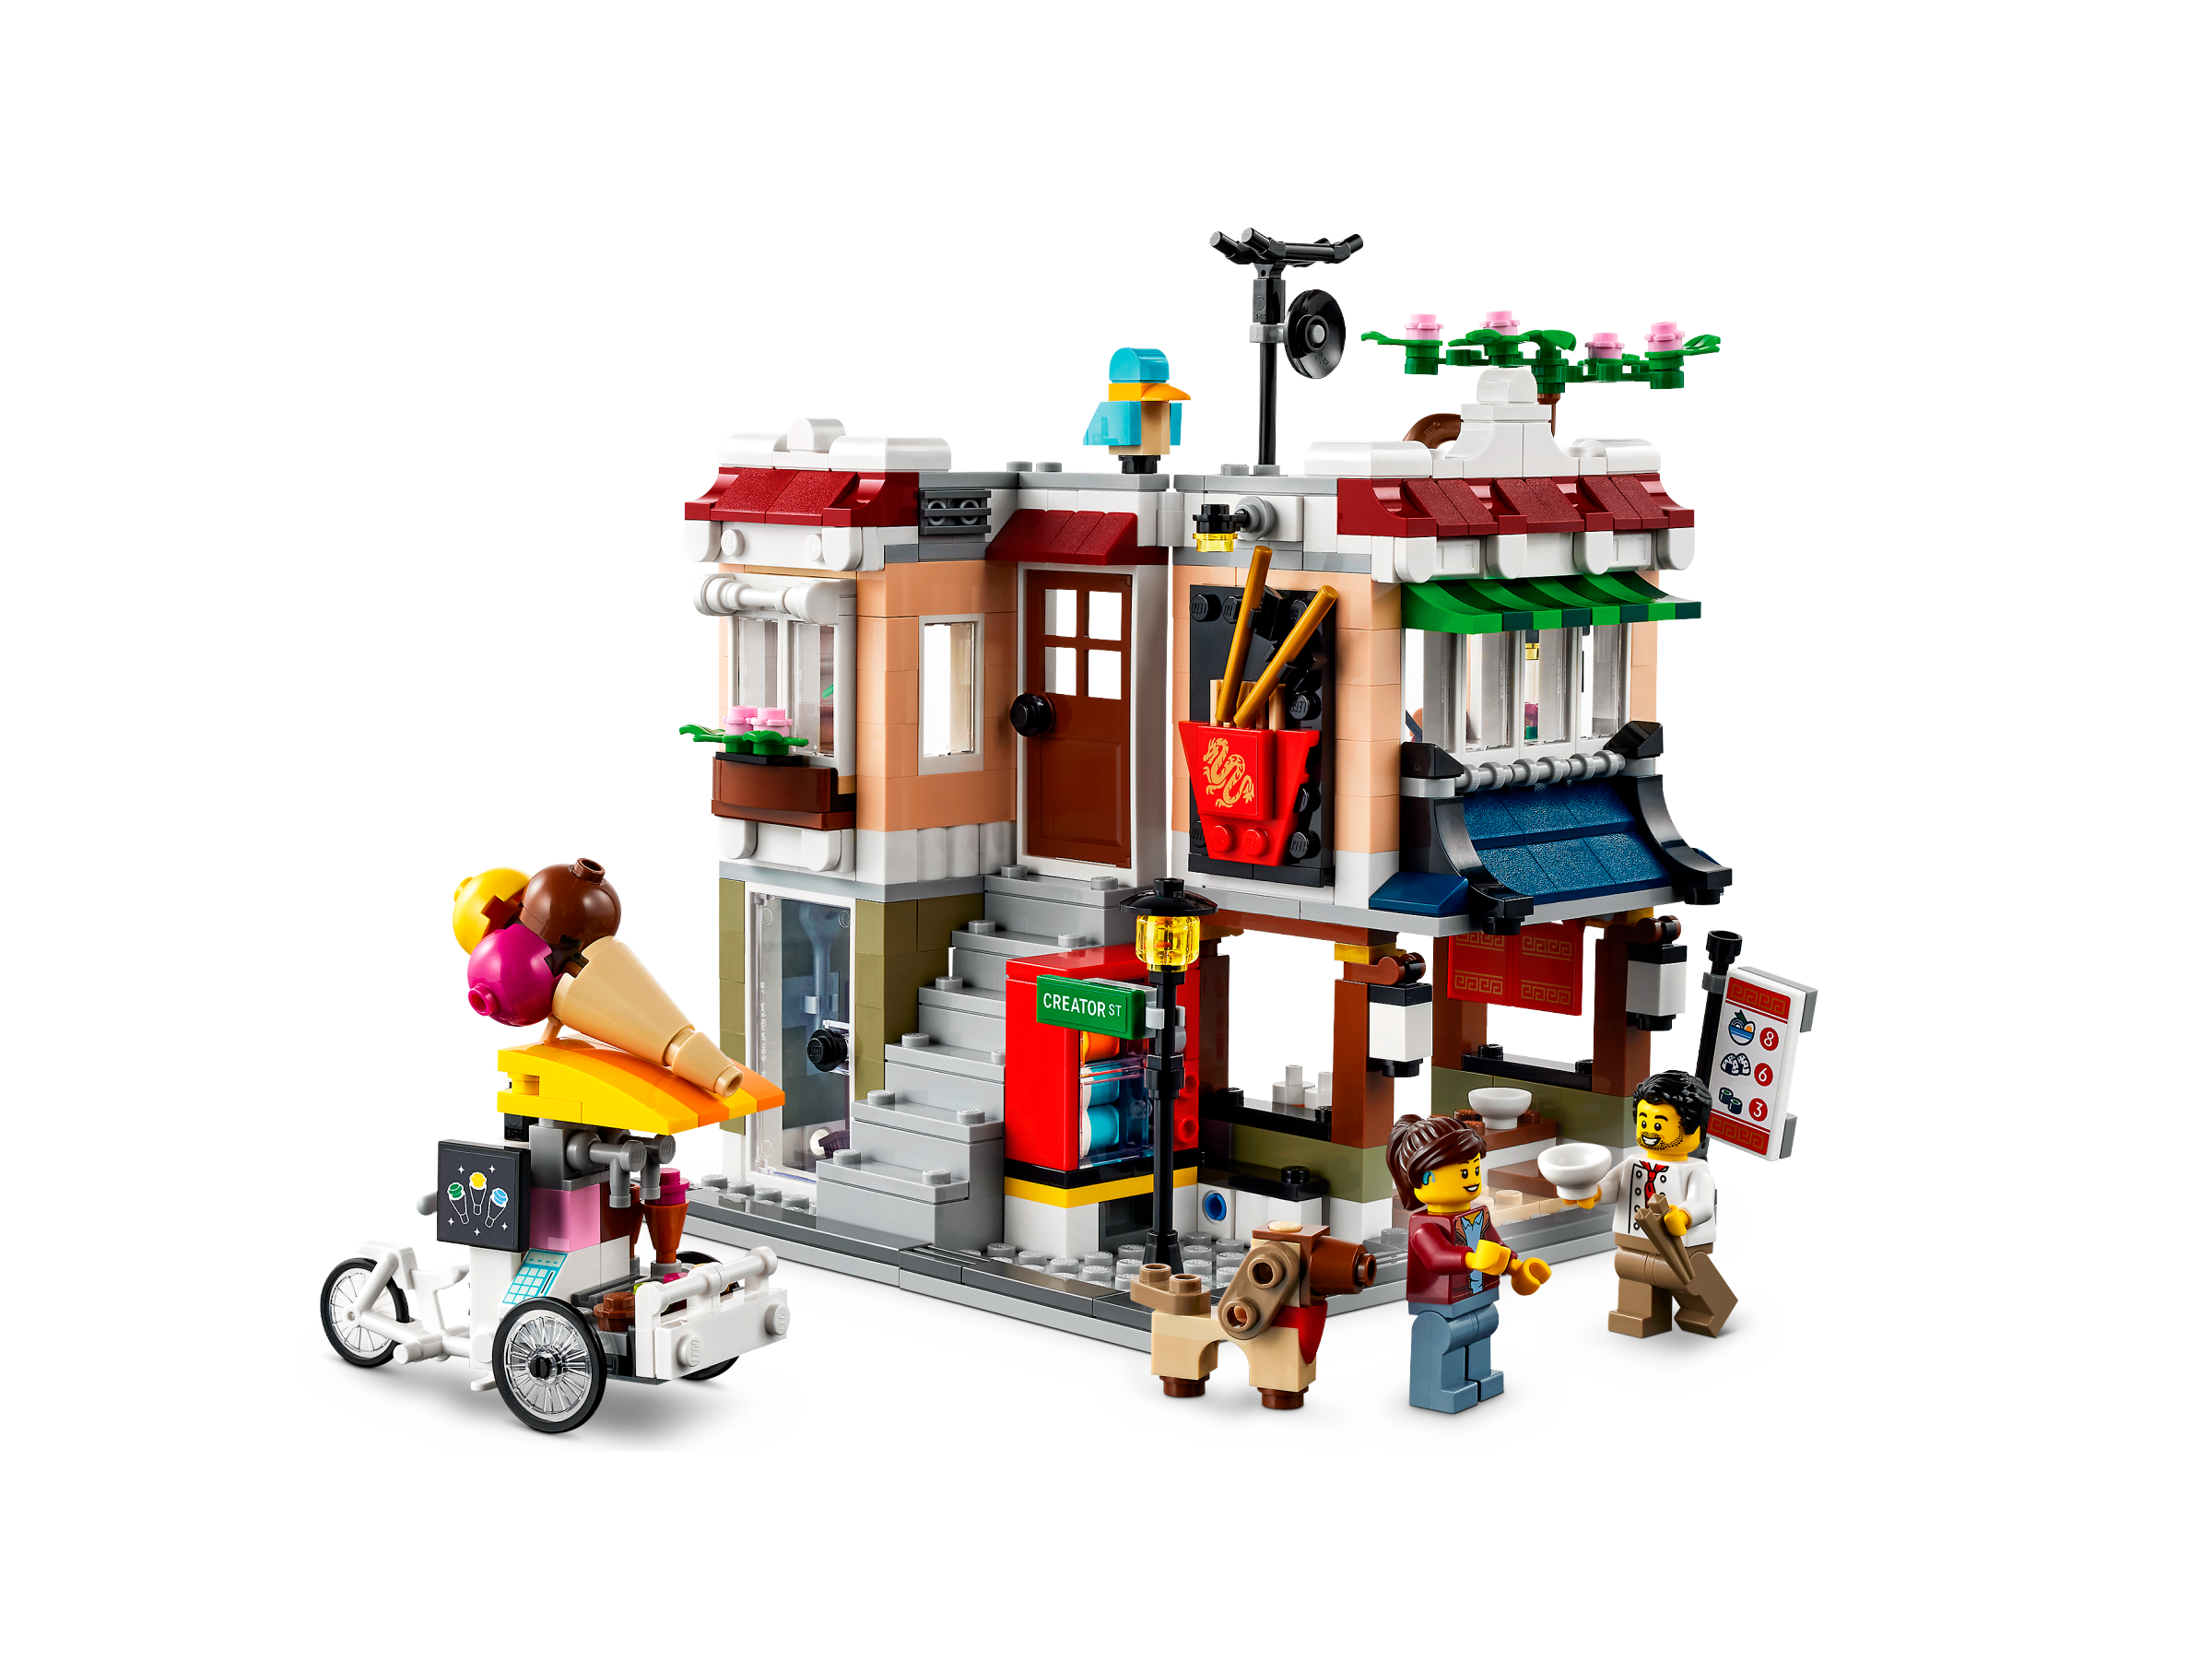 Poging naast Gebruikelijk Noedelwinkel in de stad 31131 | Creator 3-in-1 | Officiële LEGO® winkel NL